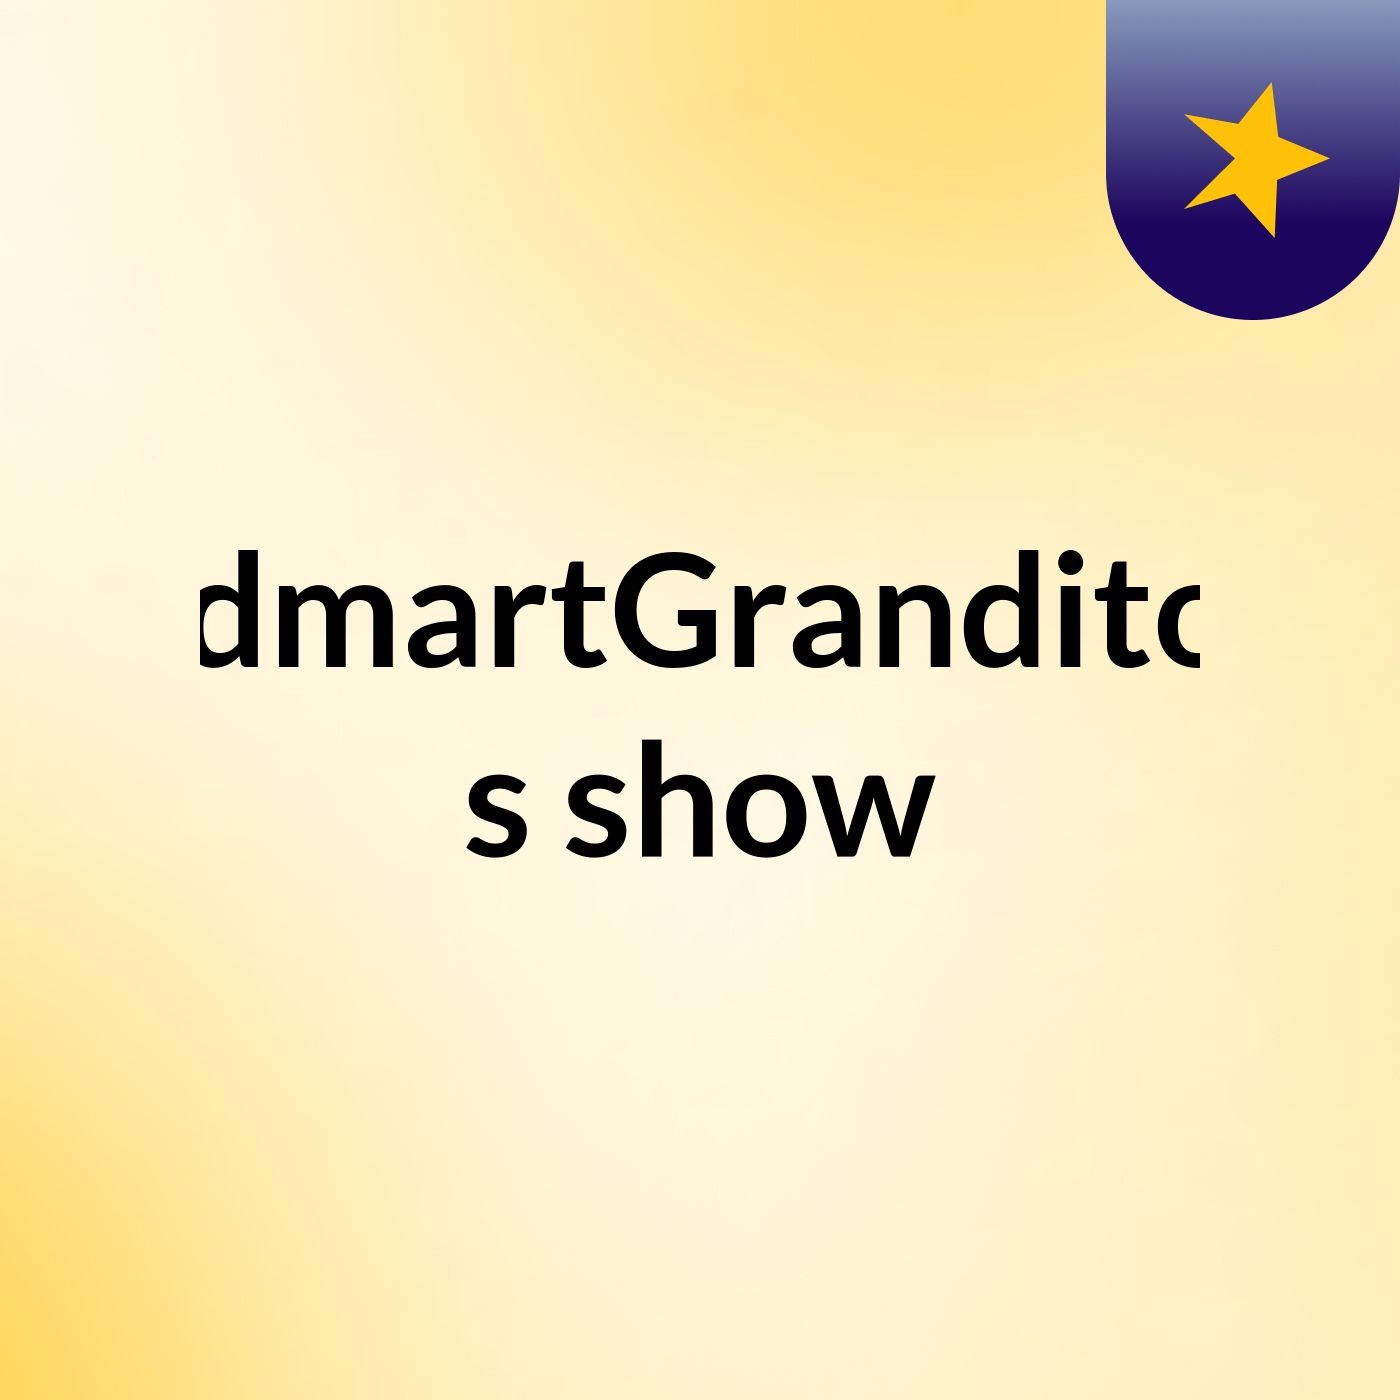 EdmartGranditos's show